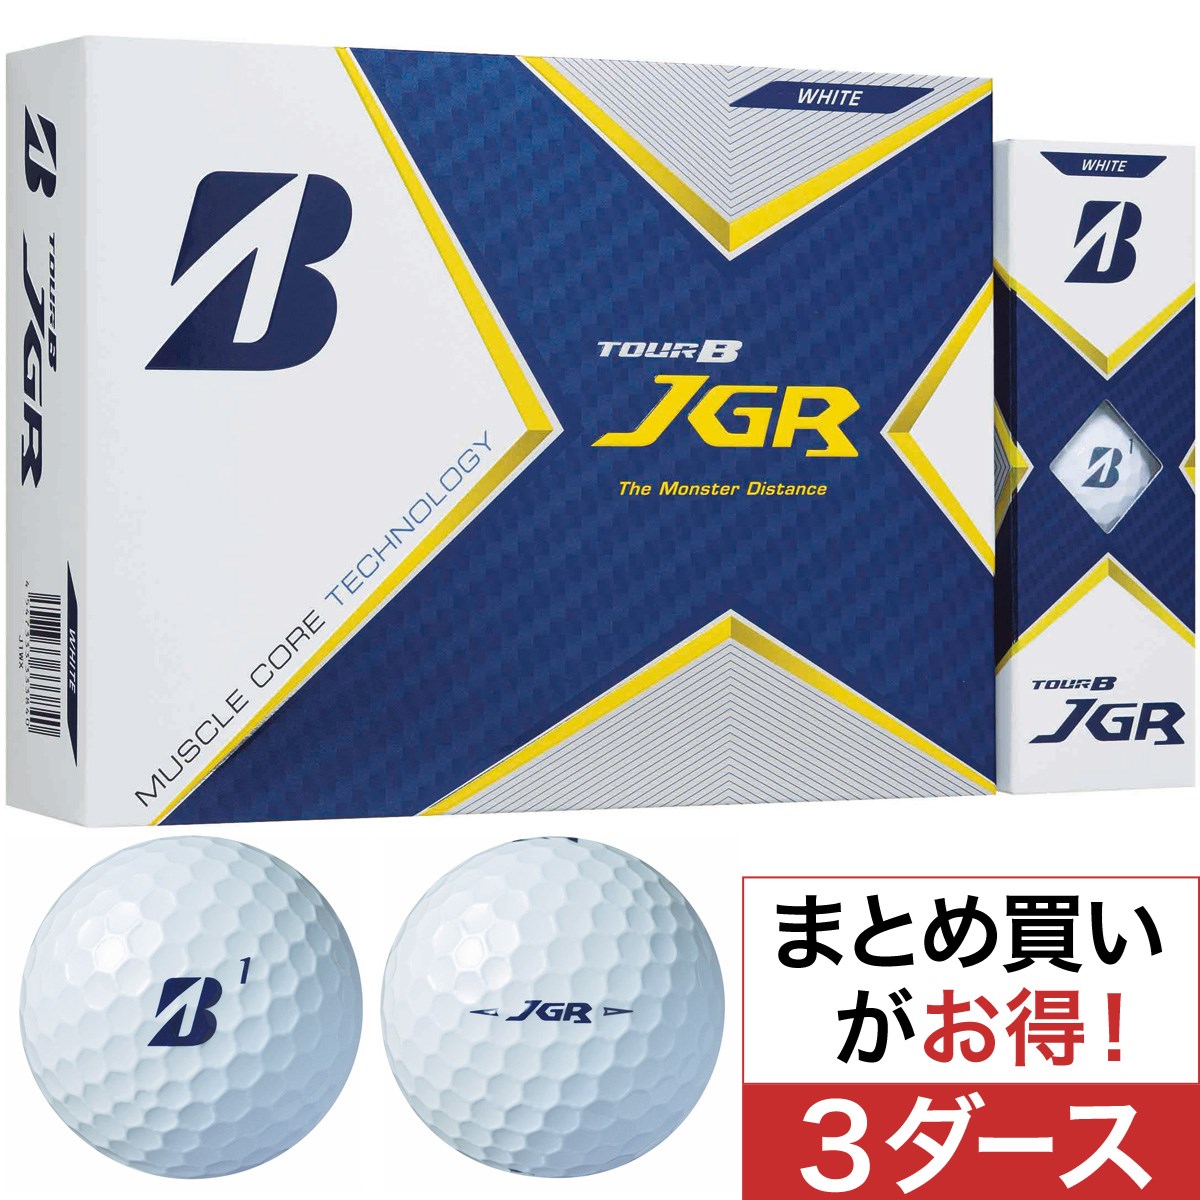 TOUR B JGR ボール 3ダースセット(ゴルフボール)